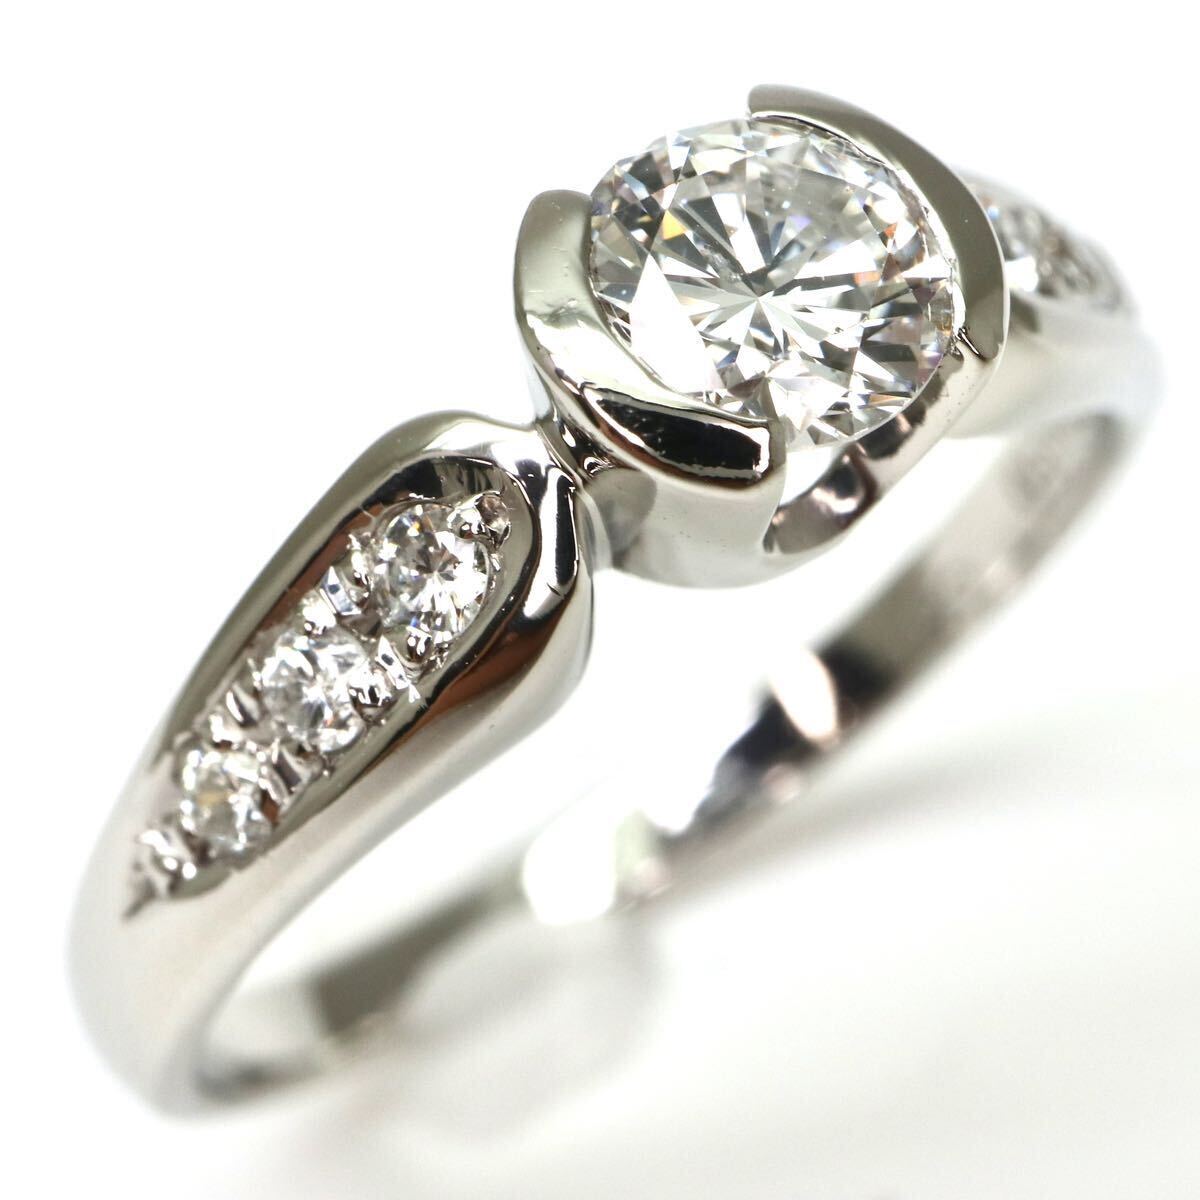 JEWELRY MAKI(ジュエリーマキ)◆Pt850 天然ダイヤモンドリング◆A 約3.6g 16号 0.38ct 0.12ct diamond ring指輪 jewelry ジュエリーEC3/ED4の画像1